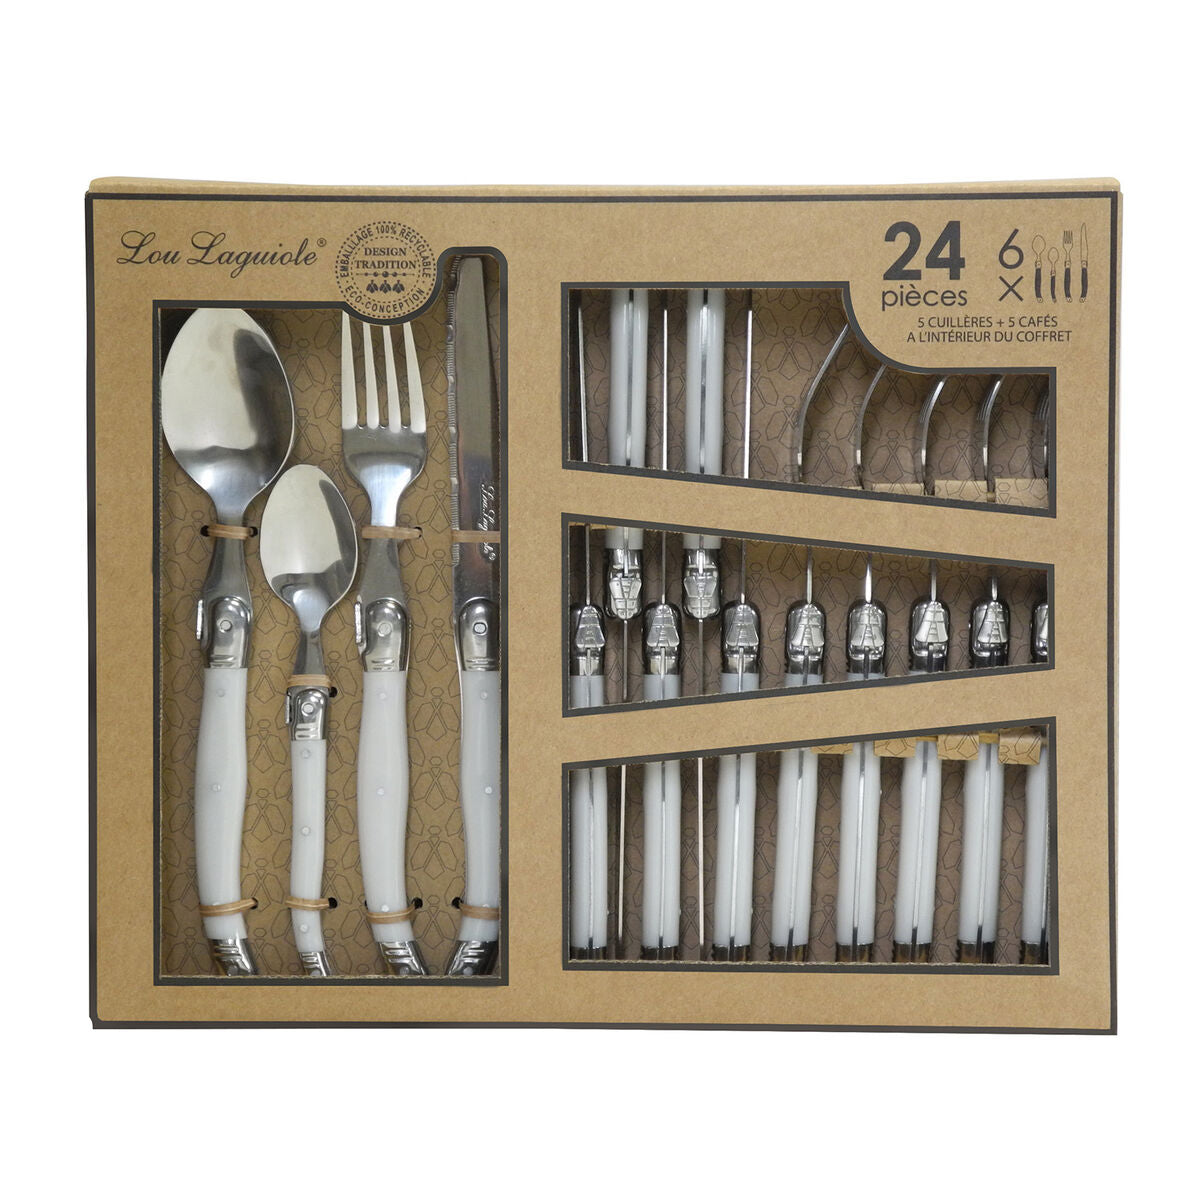 Cutlery Set Lou Laguiole Rustic 24 Pieces Bicoloured Metal-1